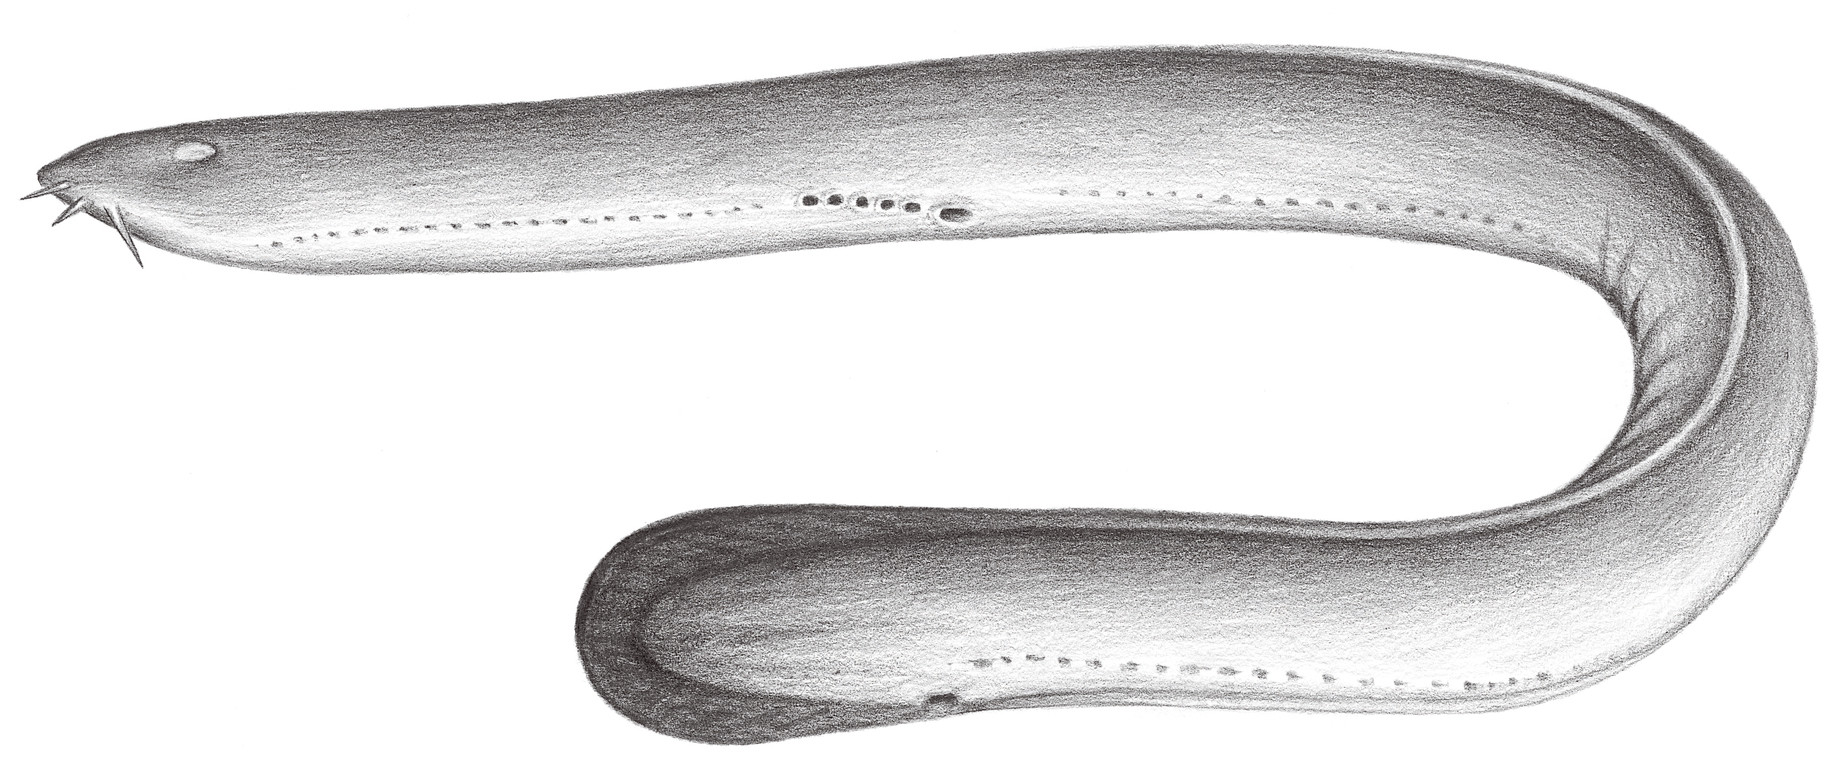 布氏粘盲鰻 Eptatretus burgeri (Birard, 1854)